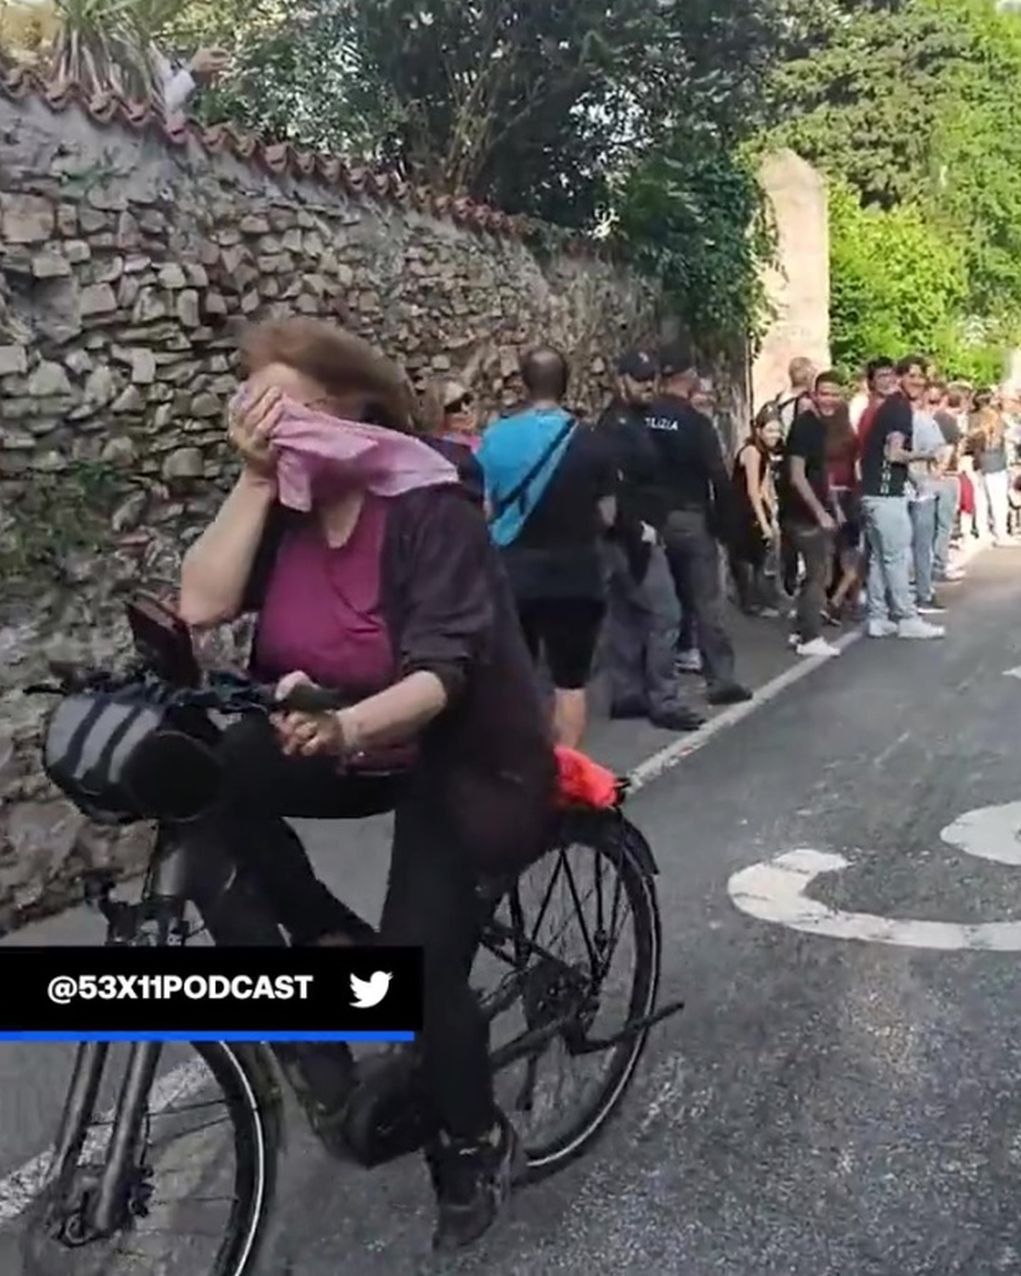 Αμέριμνη ποδηλάτισσα μπήκε κατά λάθος στον Ποδηλατικό Γύρο της Ιταλίας και την αποθέωσαν!